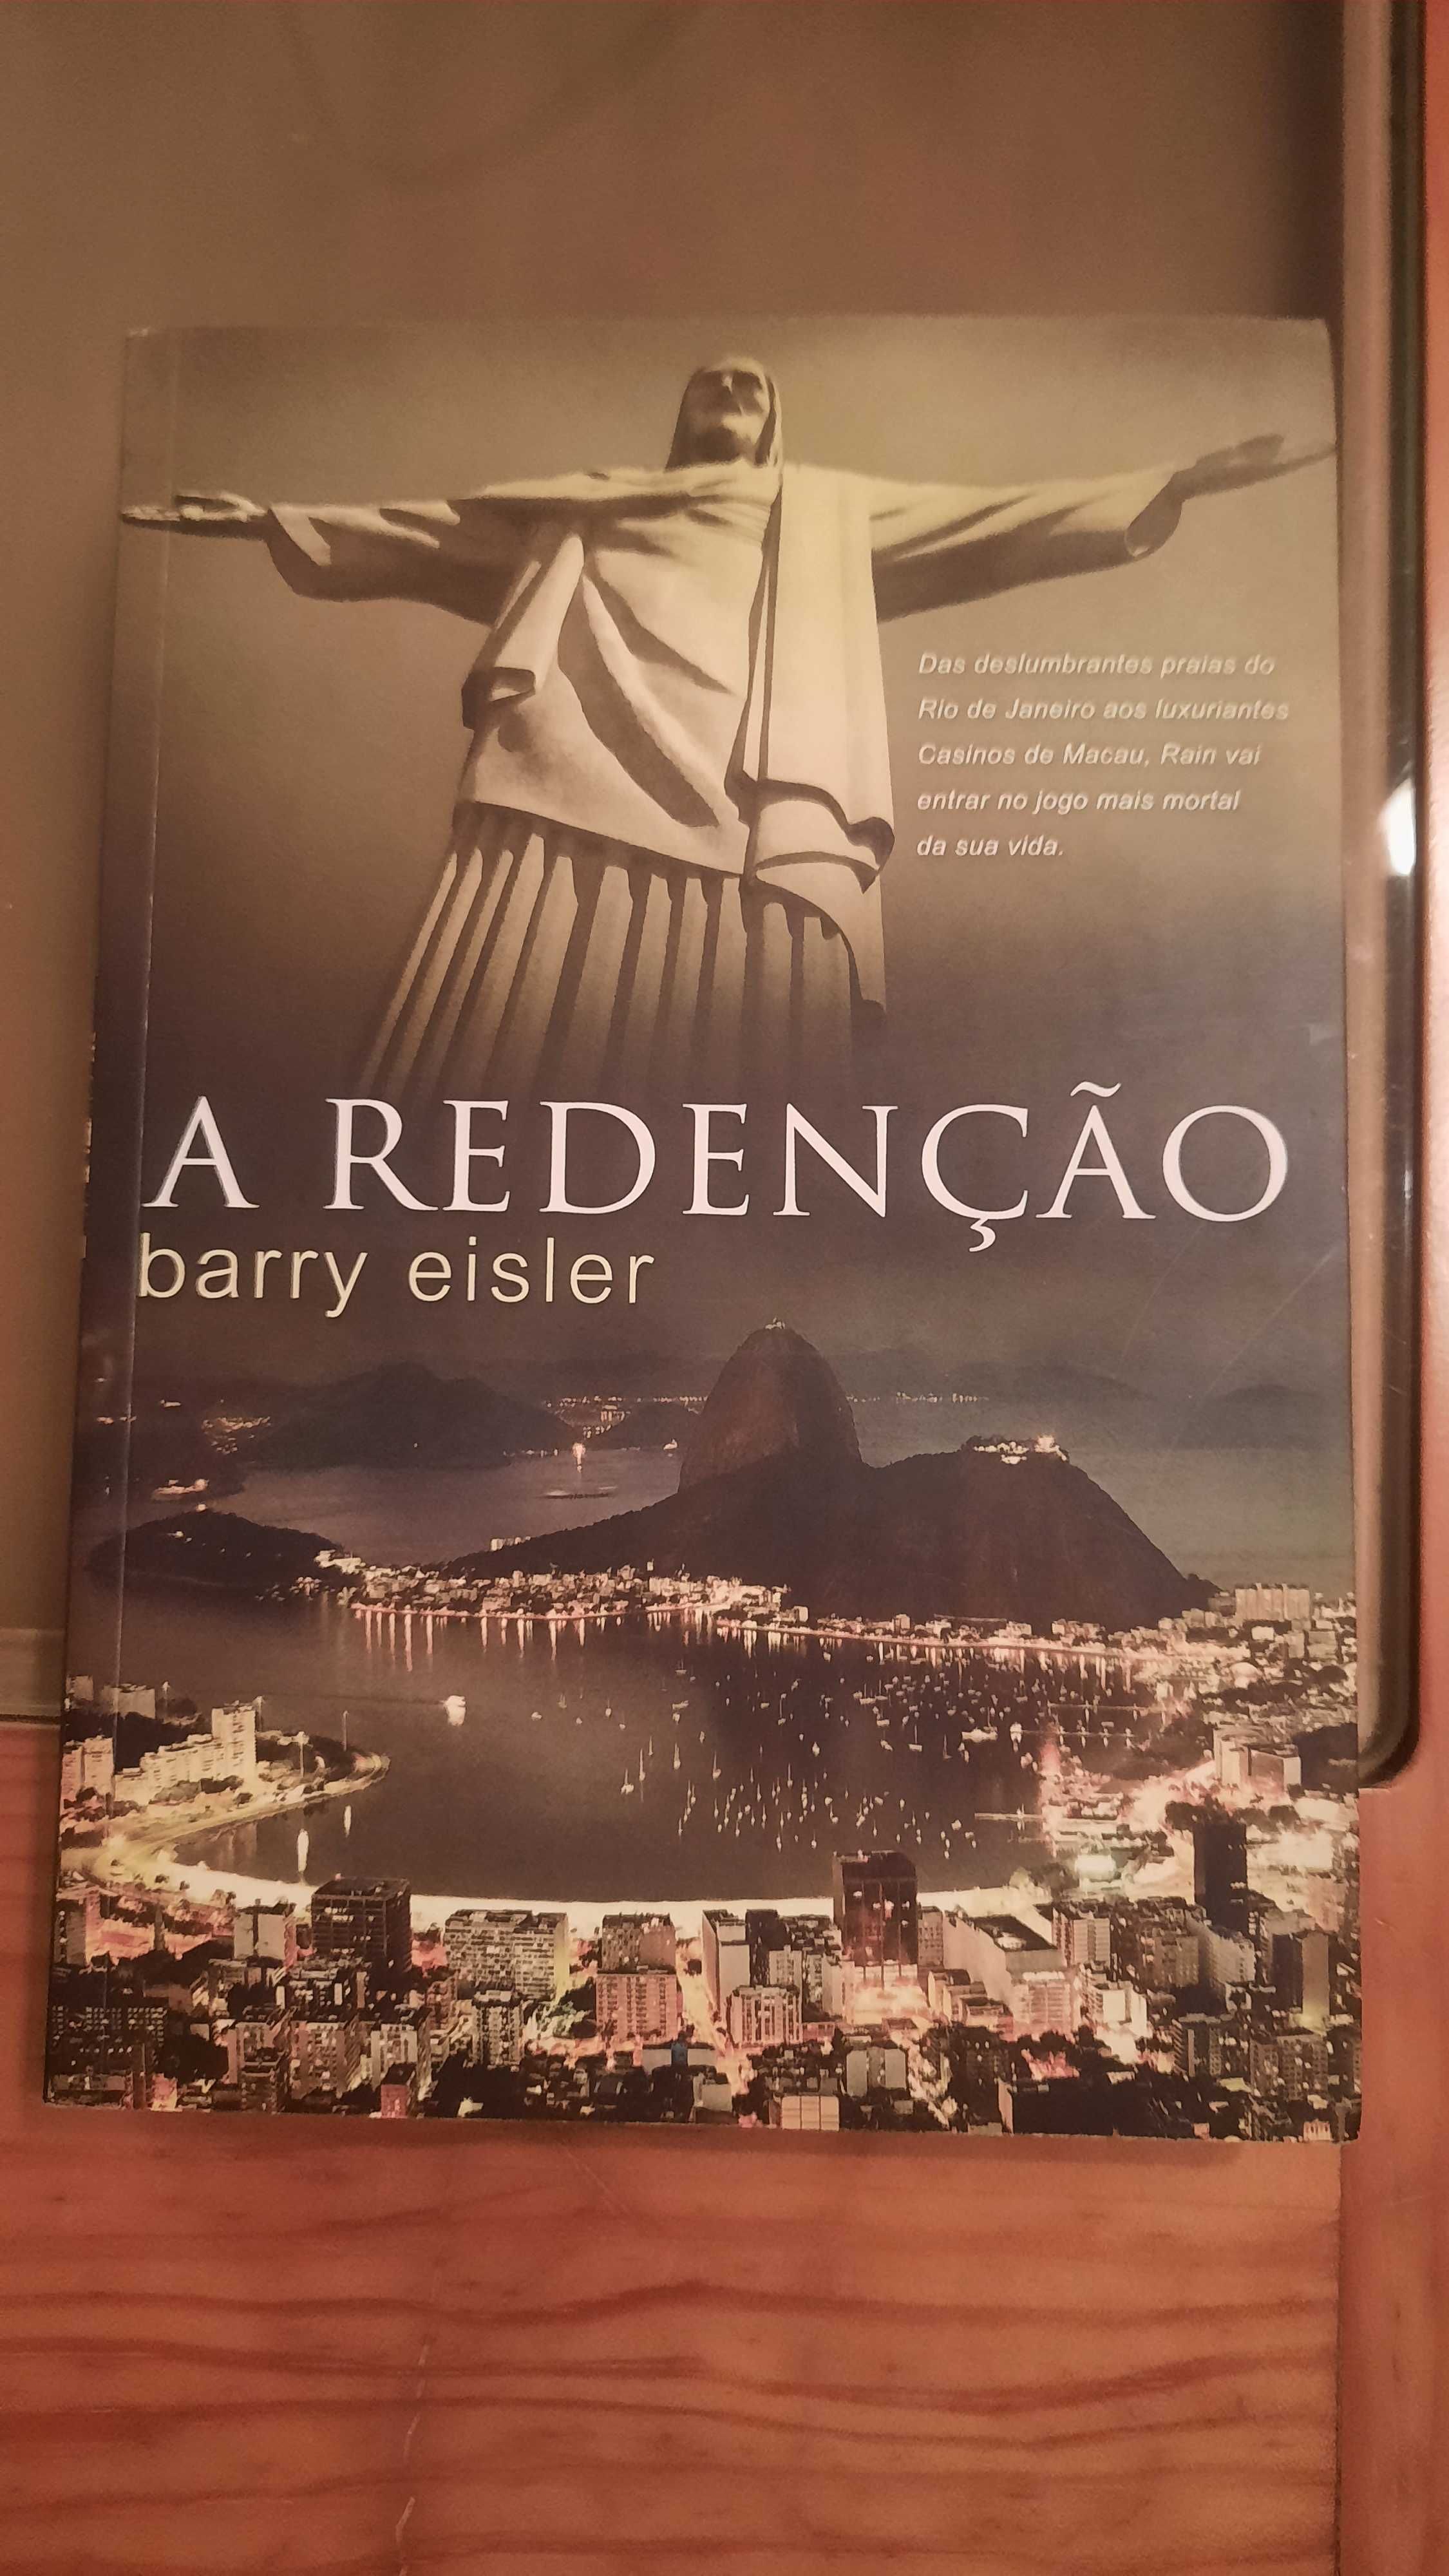 Livro "A redenção", Barry Eisler